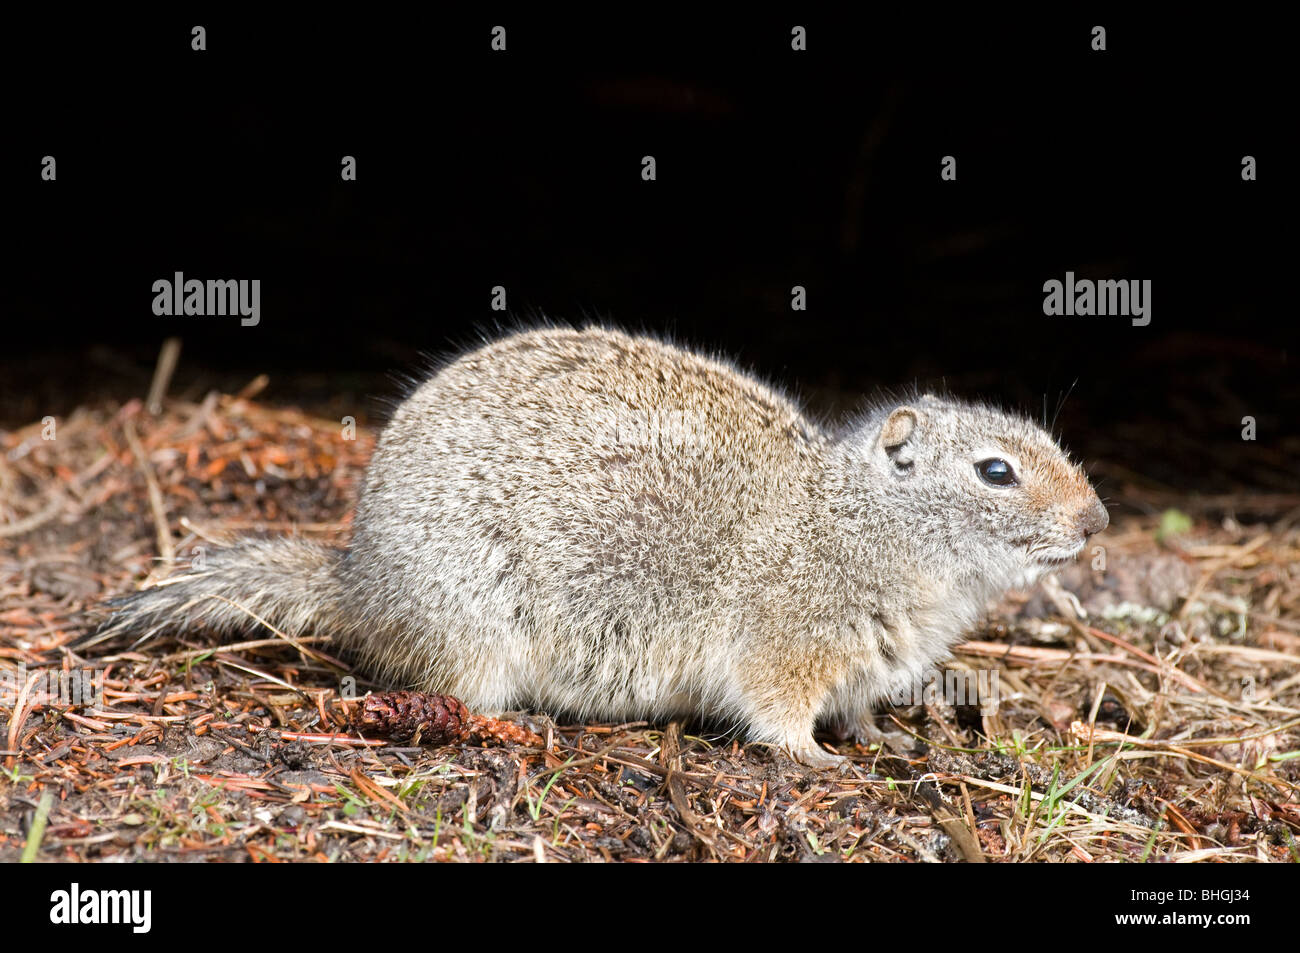 Columbian Ground Squirrel (Urocitellus columbianus, Spermophilus columbianus), adult seen side-on. Stock Photo